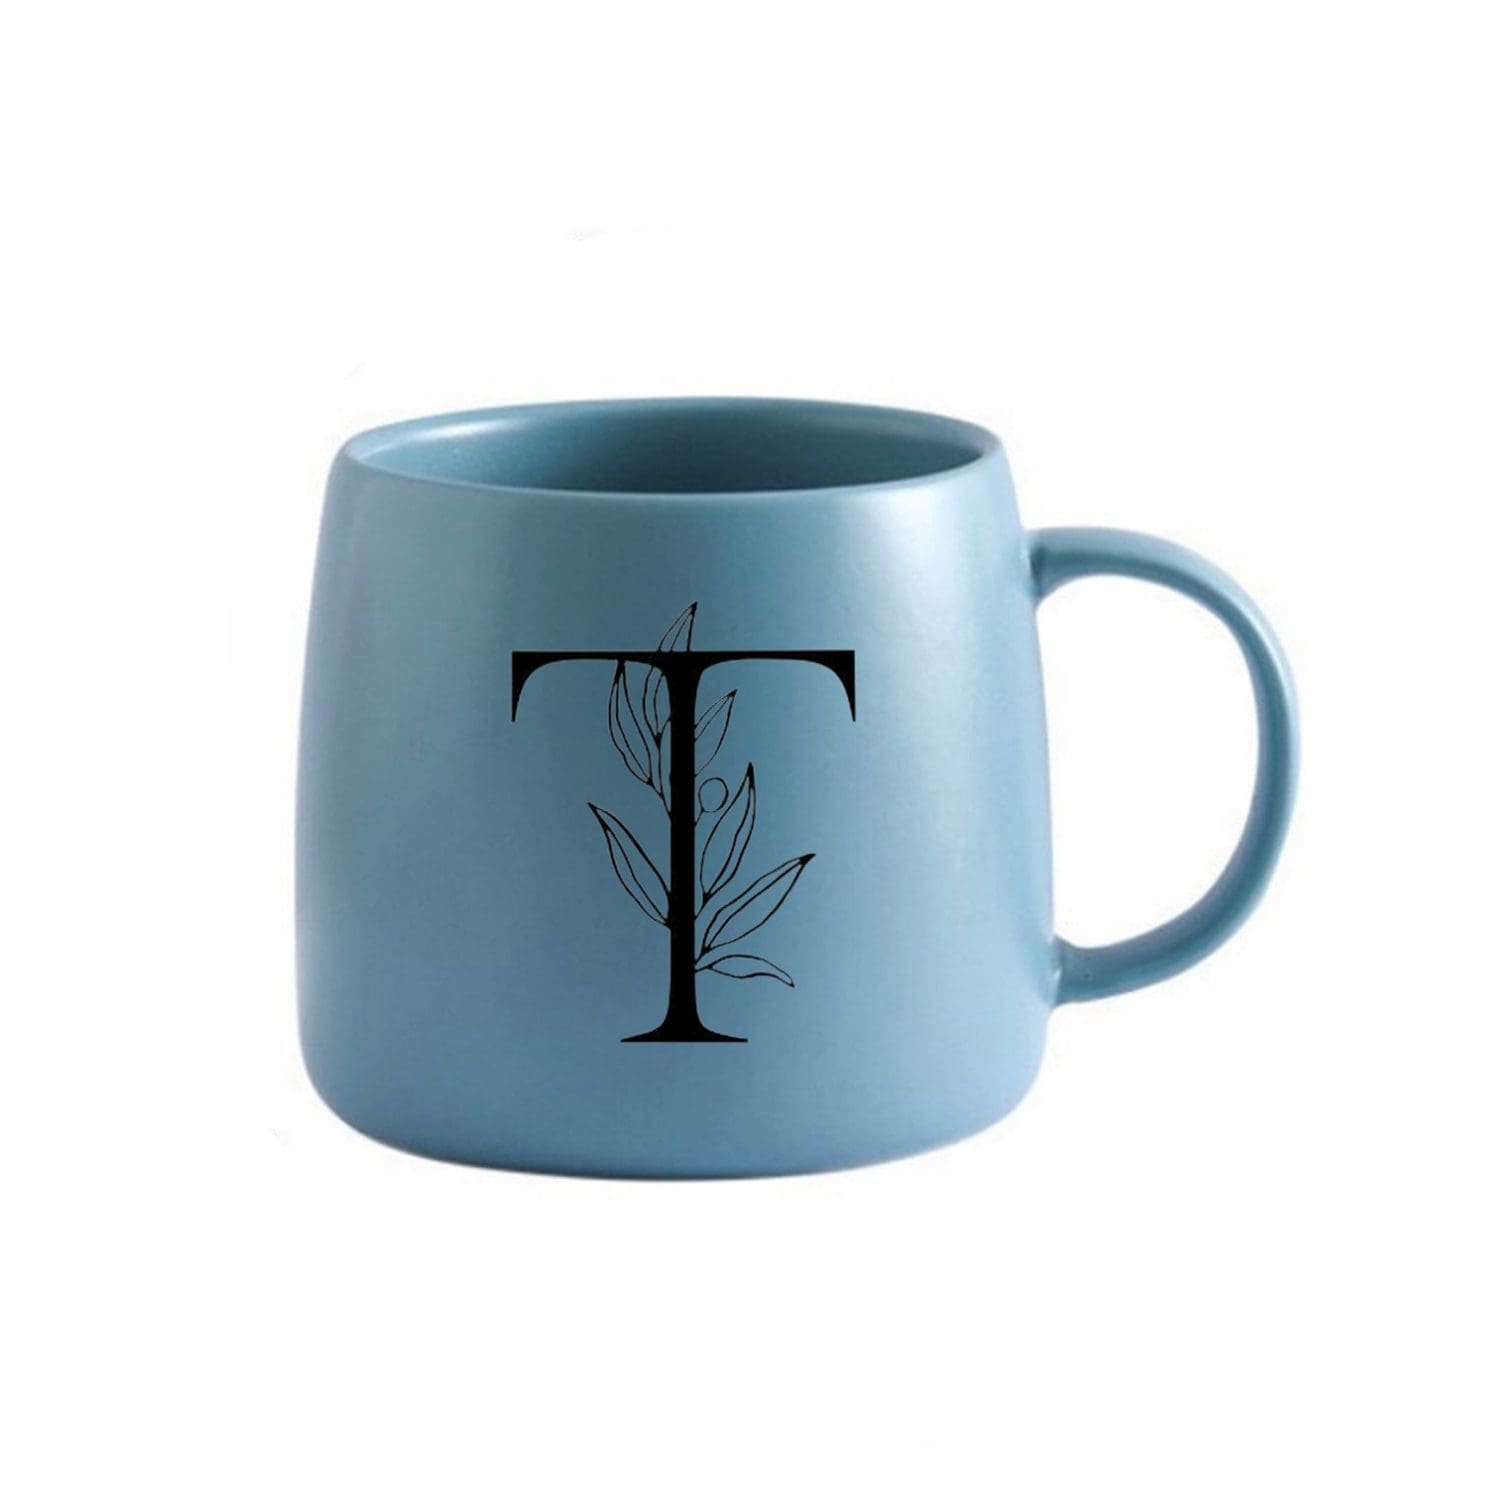 Personalised Mug - Steel Blue - Simple Letter